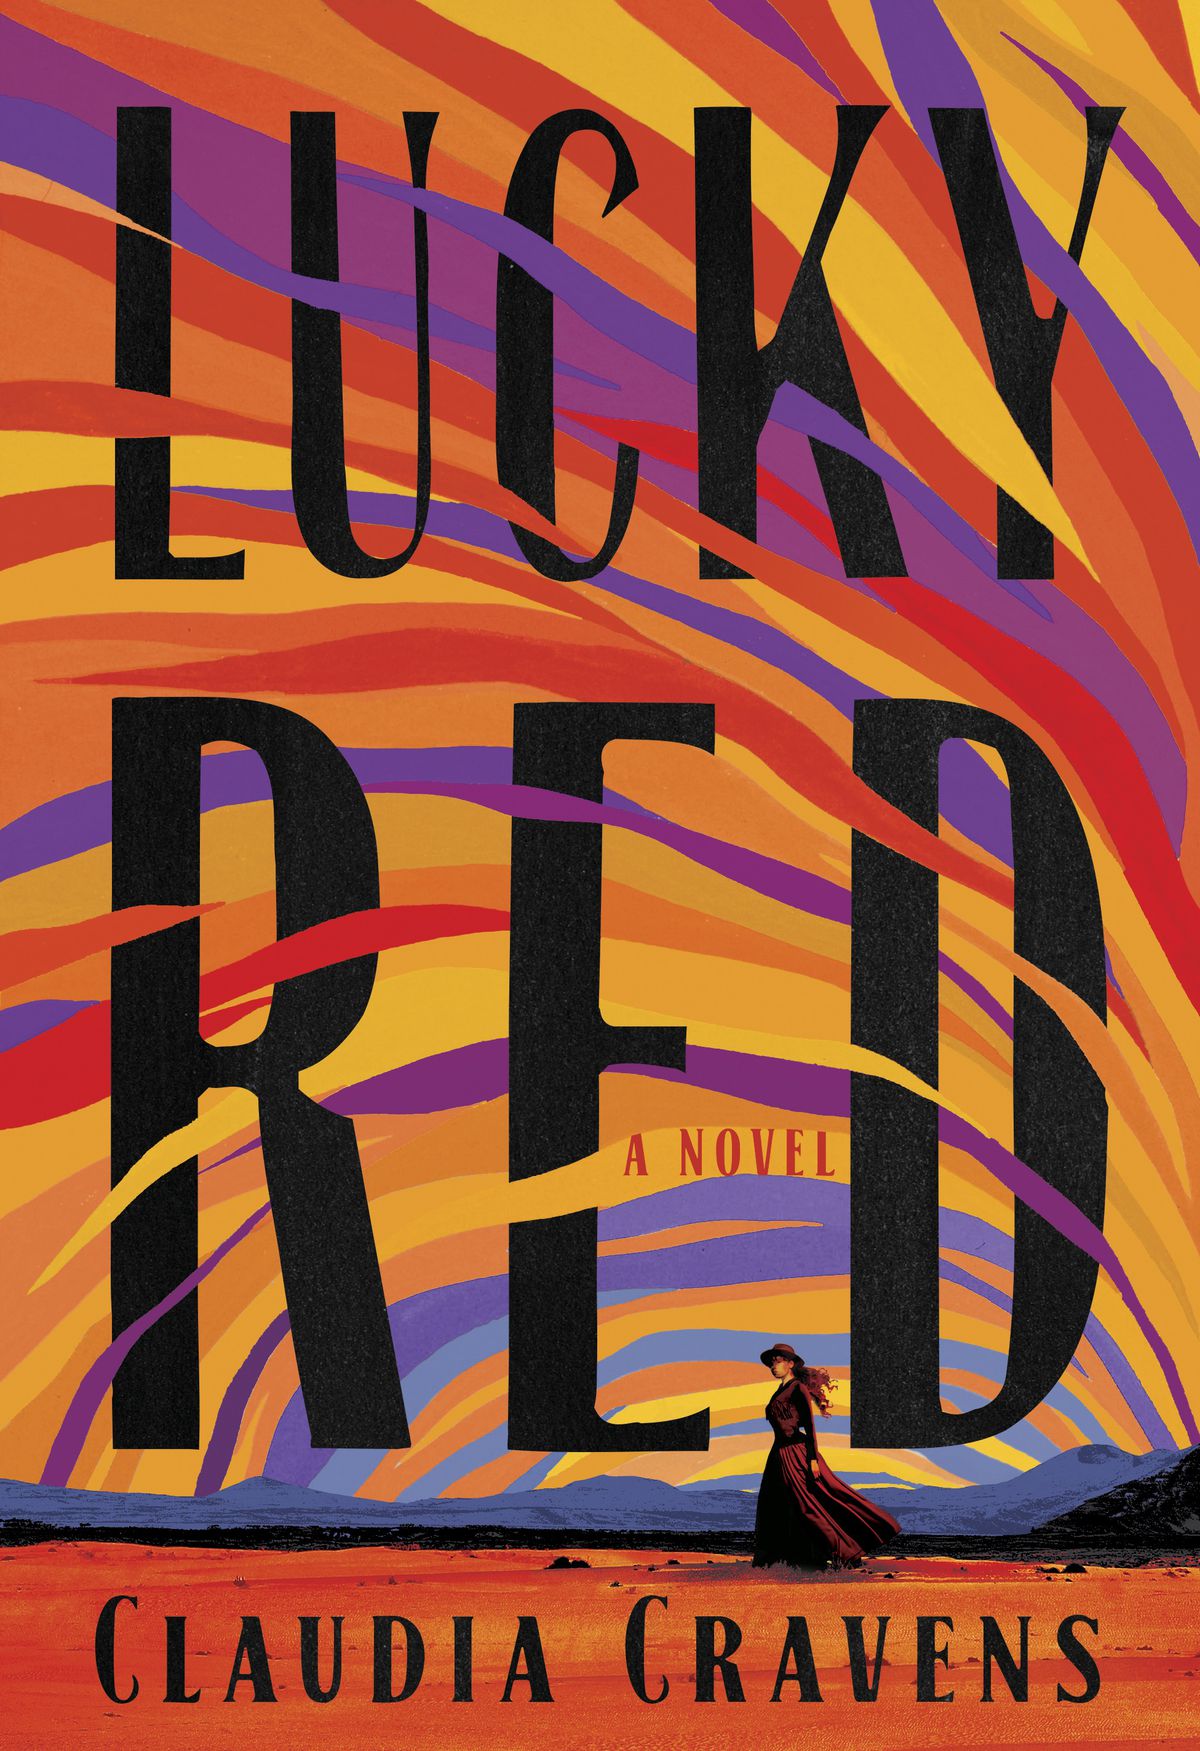 Image de couverture de Lucky Red de Claudia Cravens, qui montre une femme debout dans le désert avec un ciel coloré peint de lignes violettes, rouges, jaunes et oranges.